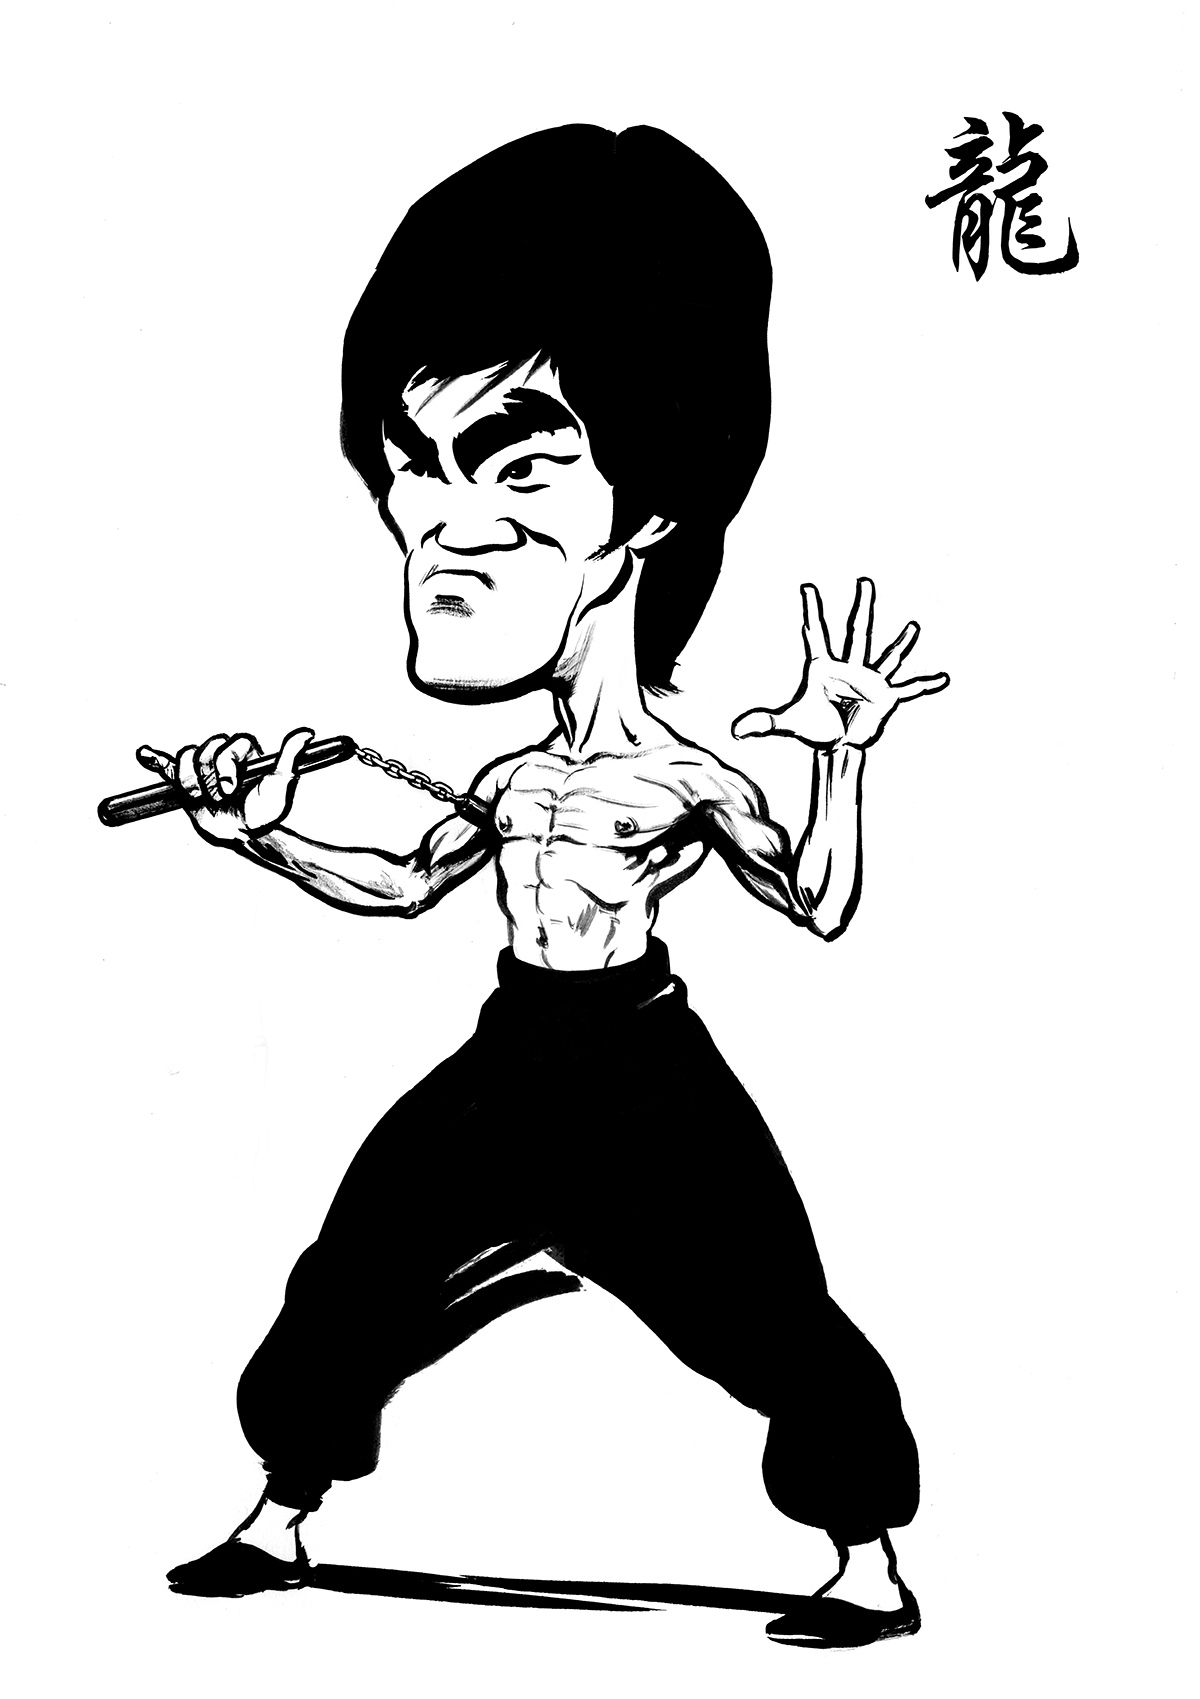 Bruce Lee - Ken Lowe Illustration